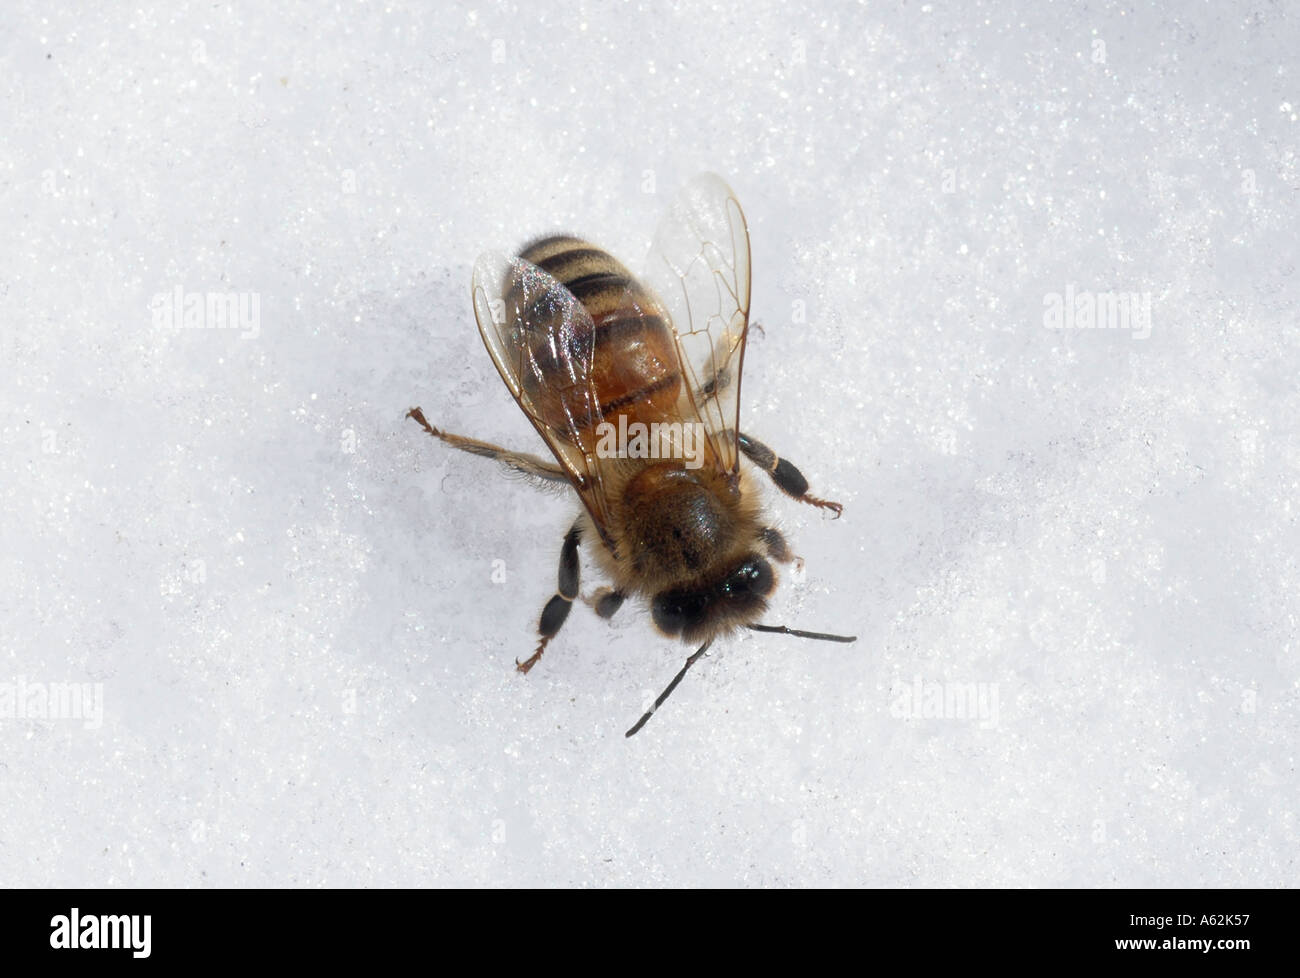 Honig Biene Insekt Biene Fehler Arbeiter Biene Bug mit Flügel Biene auf  Schnee Honigbiene auf Schnee Biene im Winter Biene mit Flügel Nahaufnahme  von Biene ho Stockfotografie - Alamy